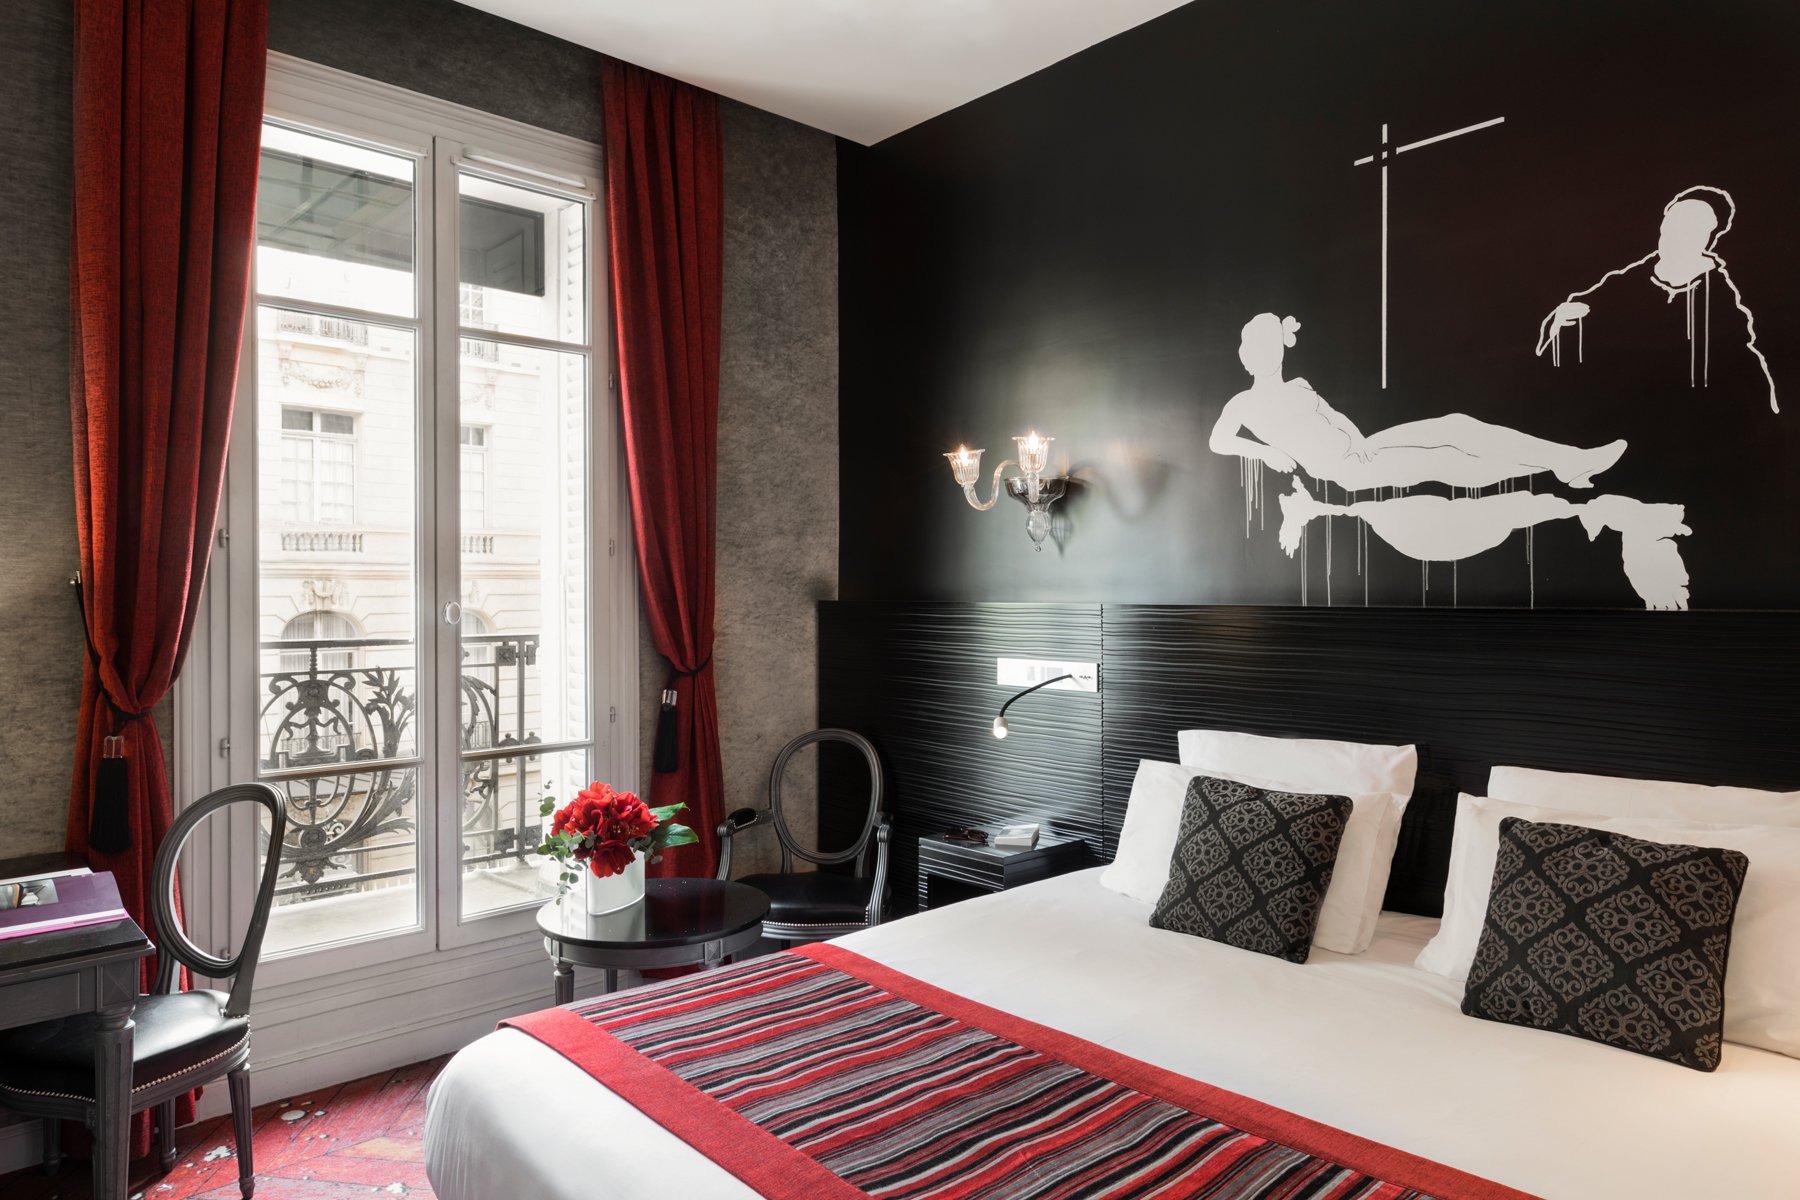 Maison Albar Hotels Le Champs-Elysées chambre supérieure